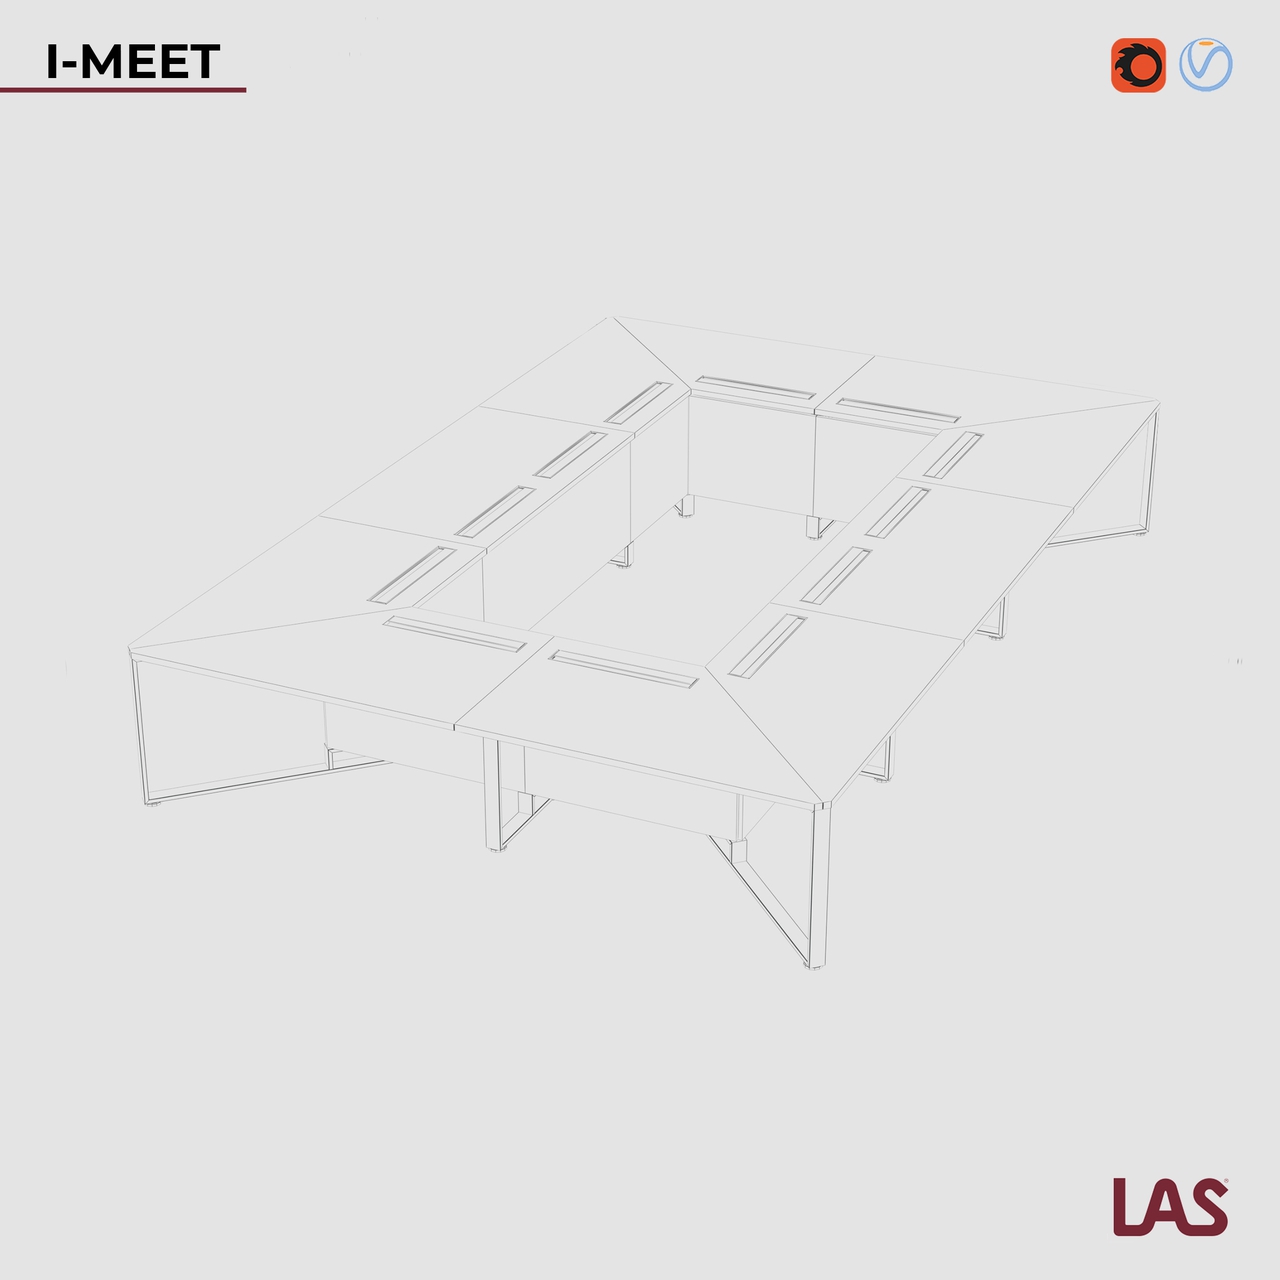 Превью G 3D-модели большого прямоугольного переговорного стола на 20 человек LAS I-Meet 146658